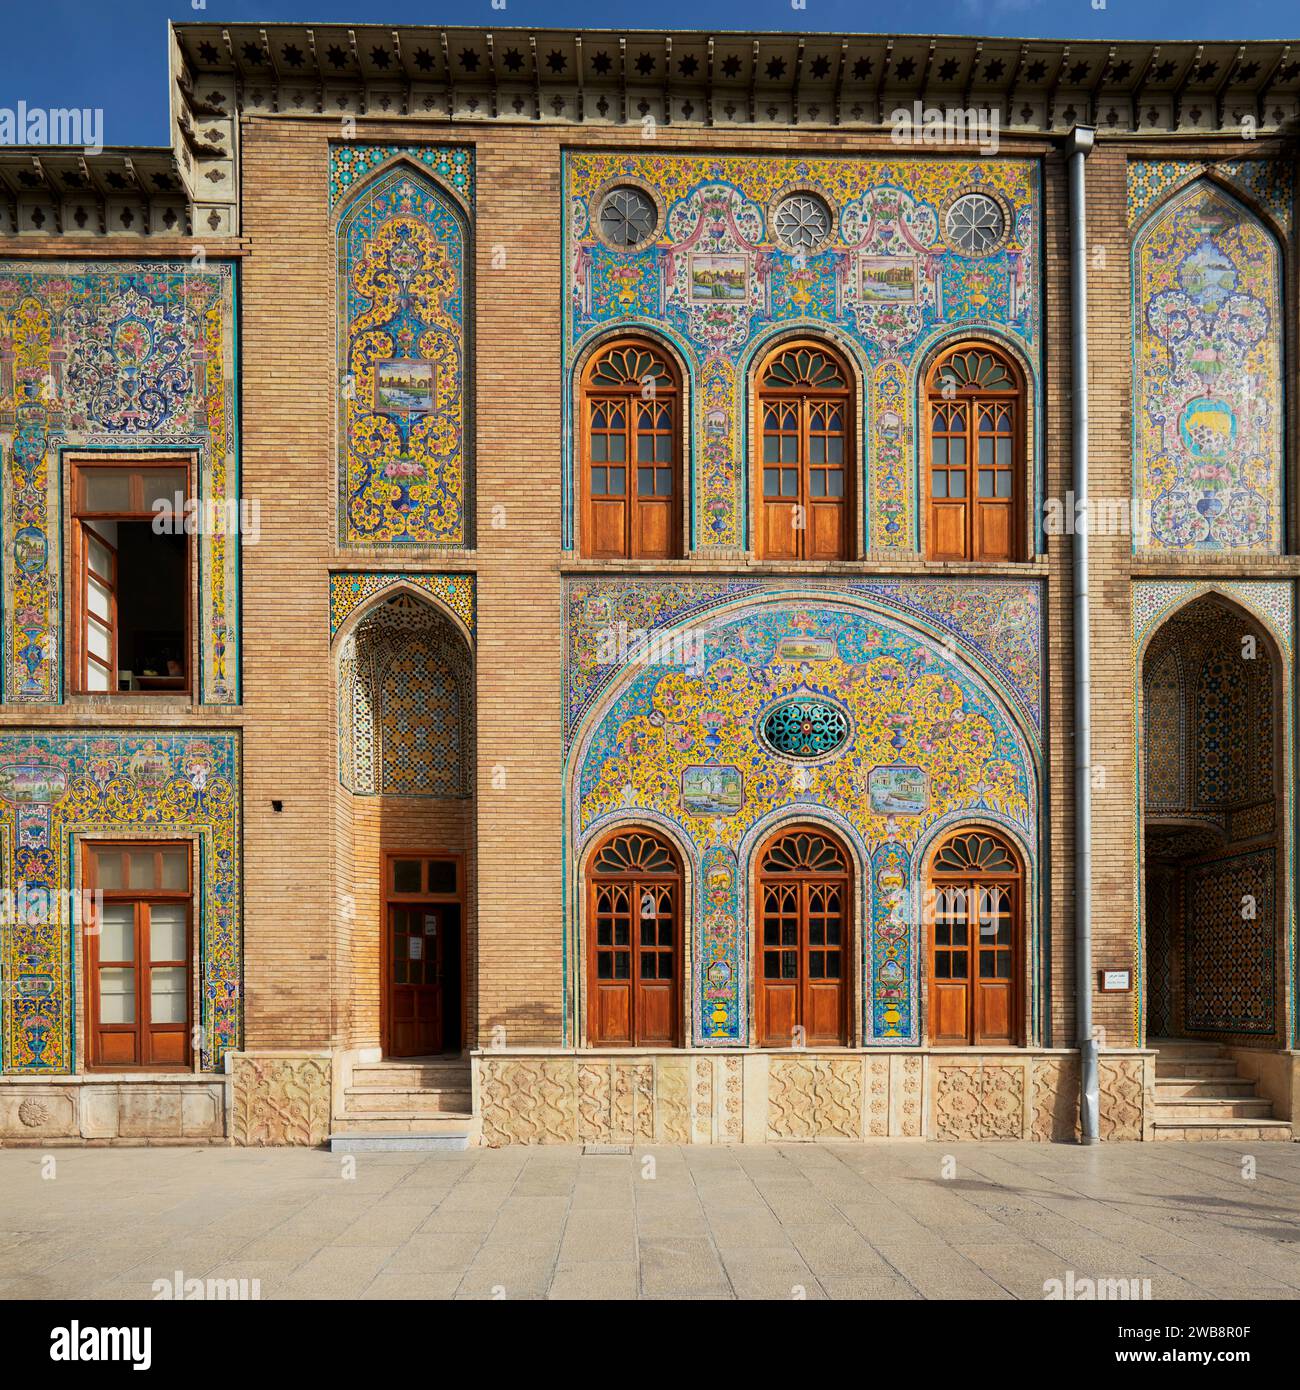 Carrelage élaboré sur la façade du bâtiment du trône de marbre dans le palais du Golestan, site du patrimoine mondial de l'UNESCO. Téhéran, Iran. Banque D'Images